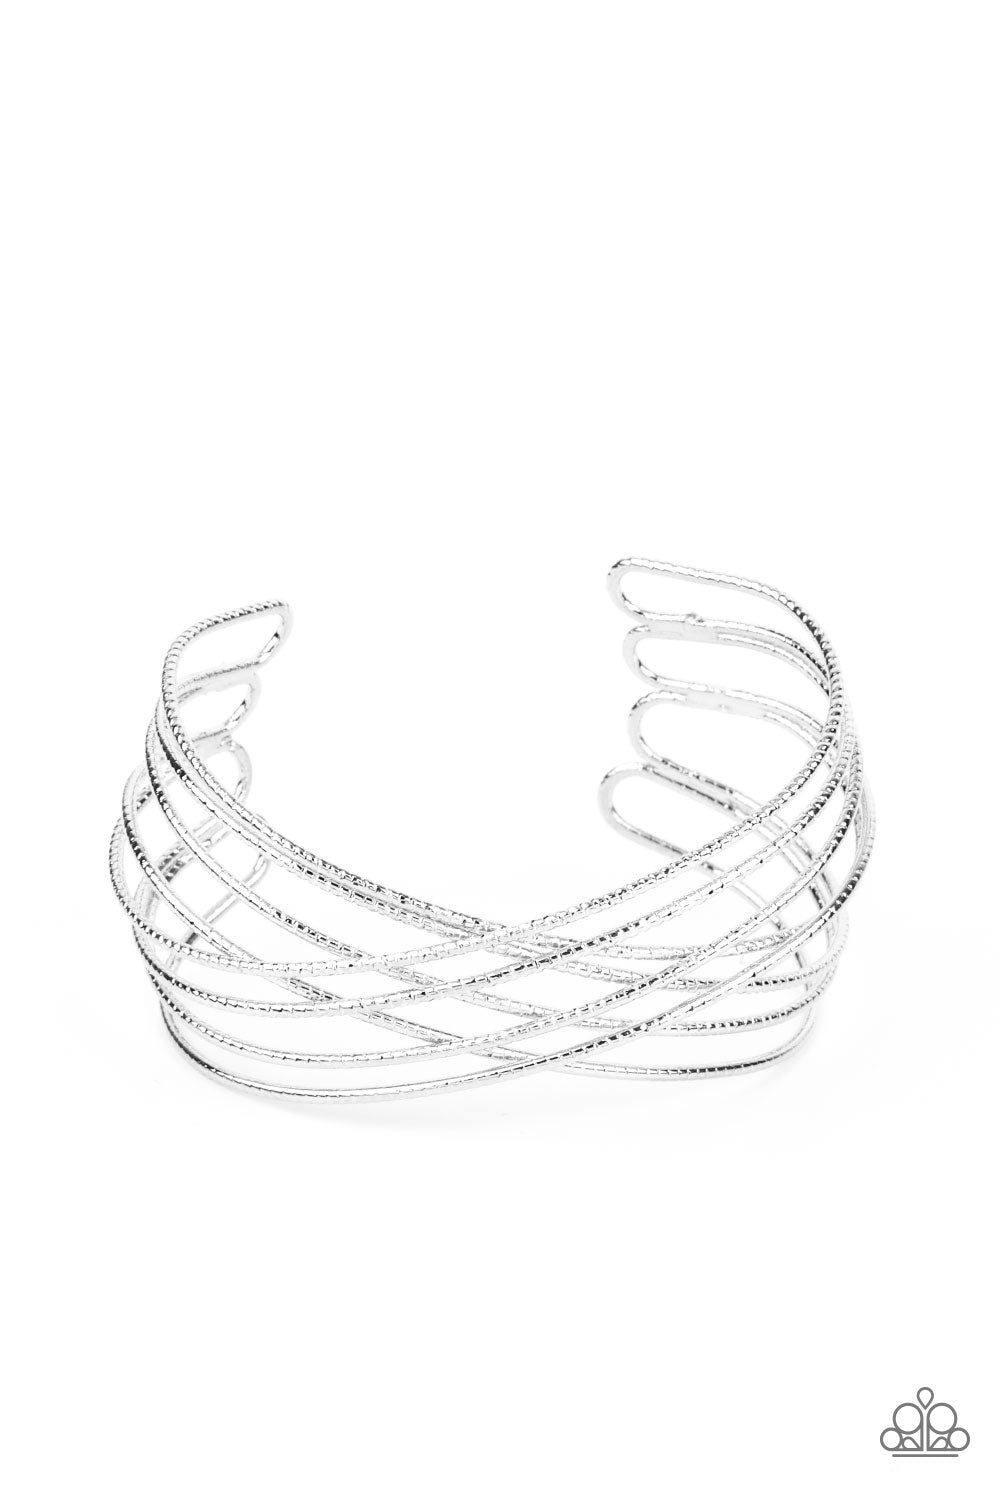 Strike Out Shimmer - Silver Bracelet